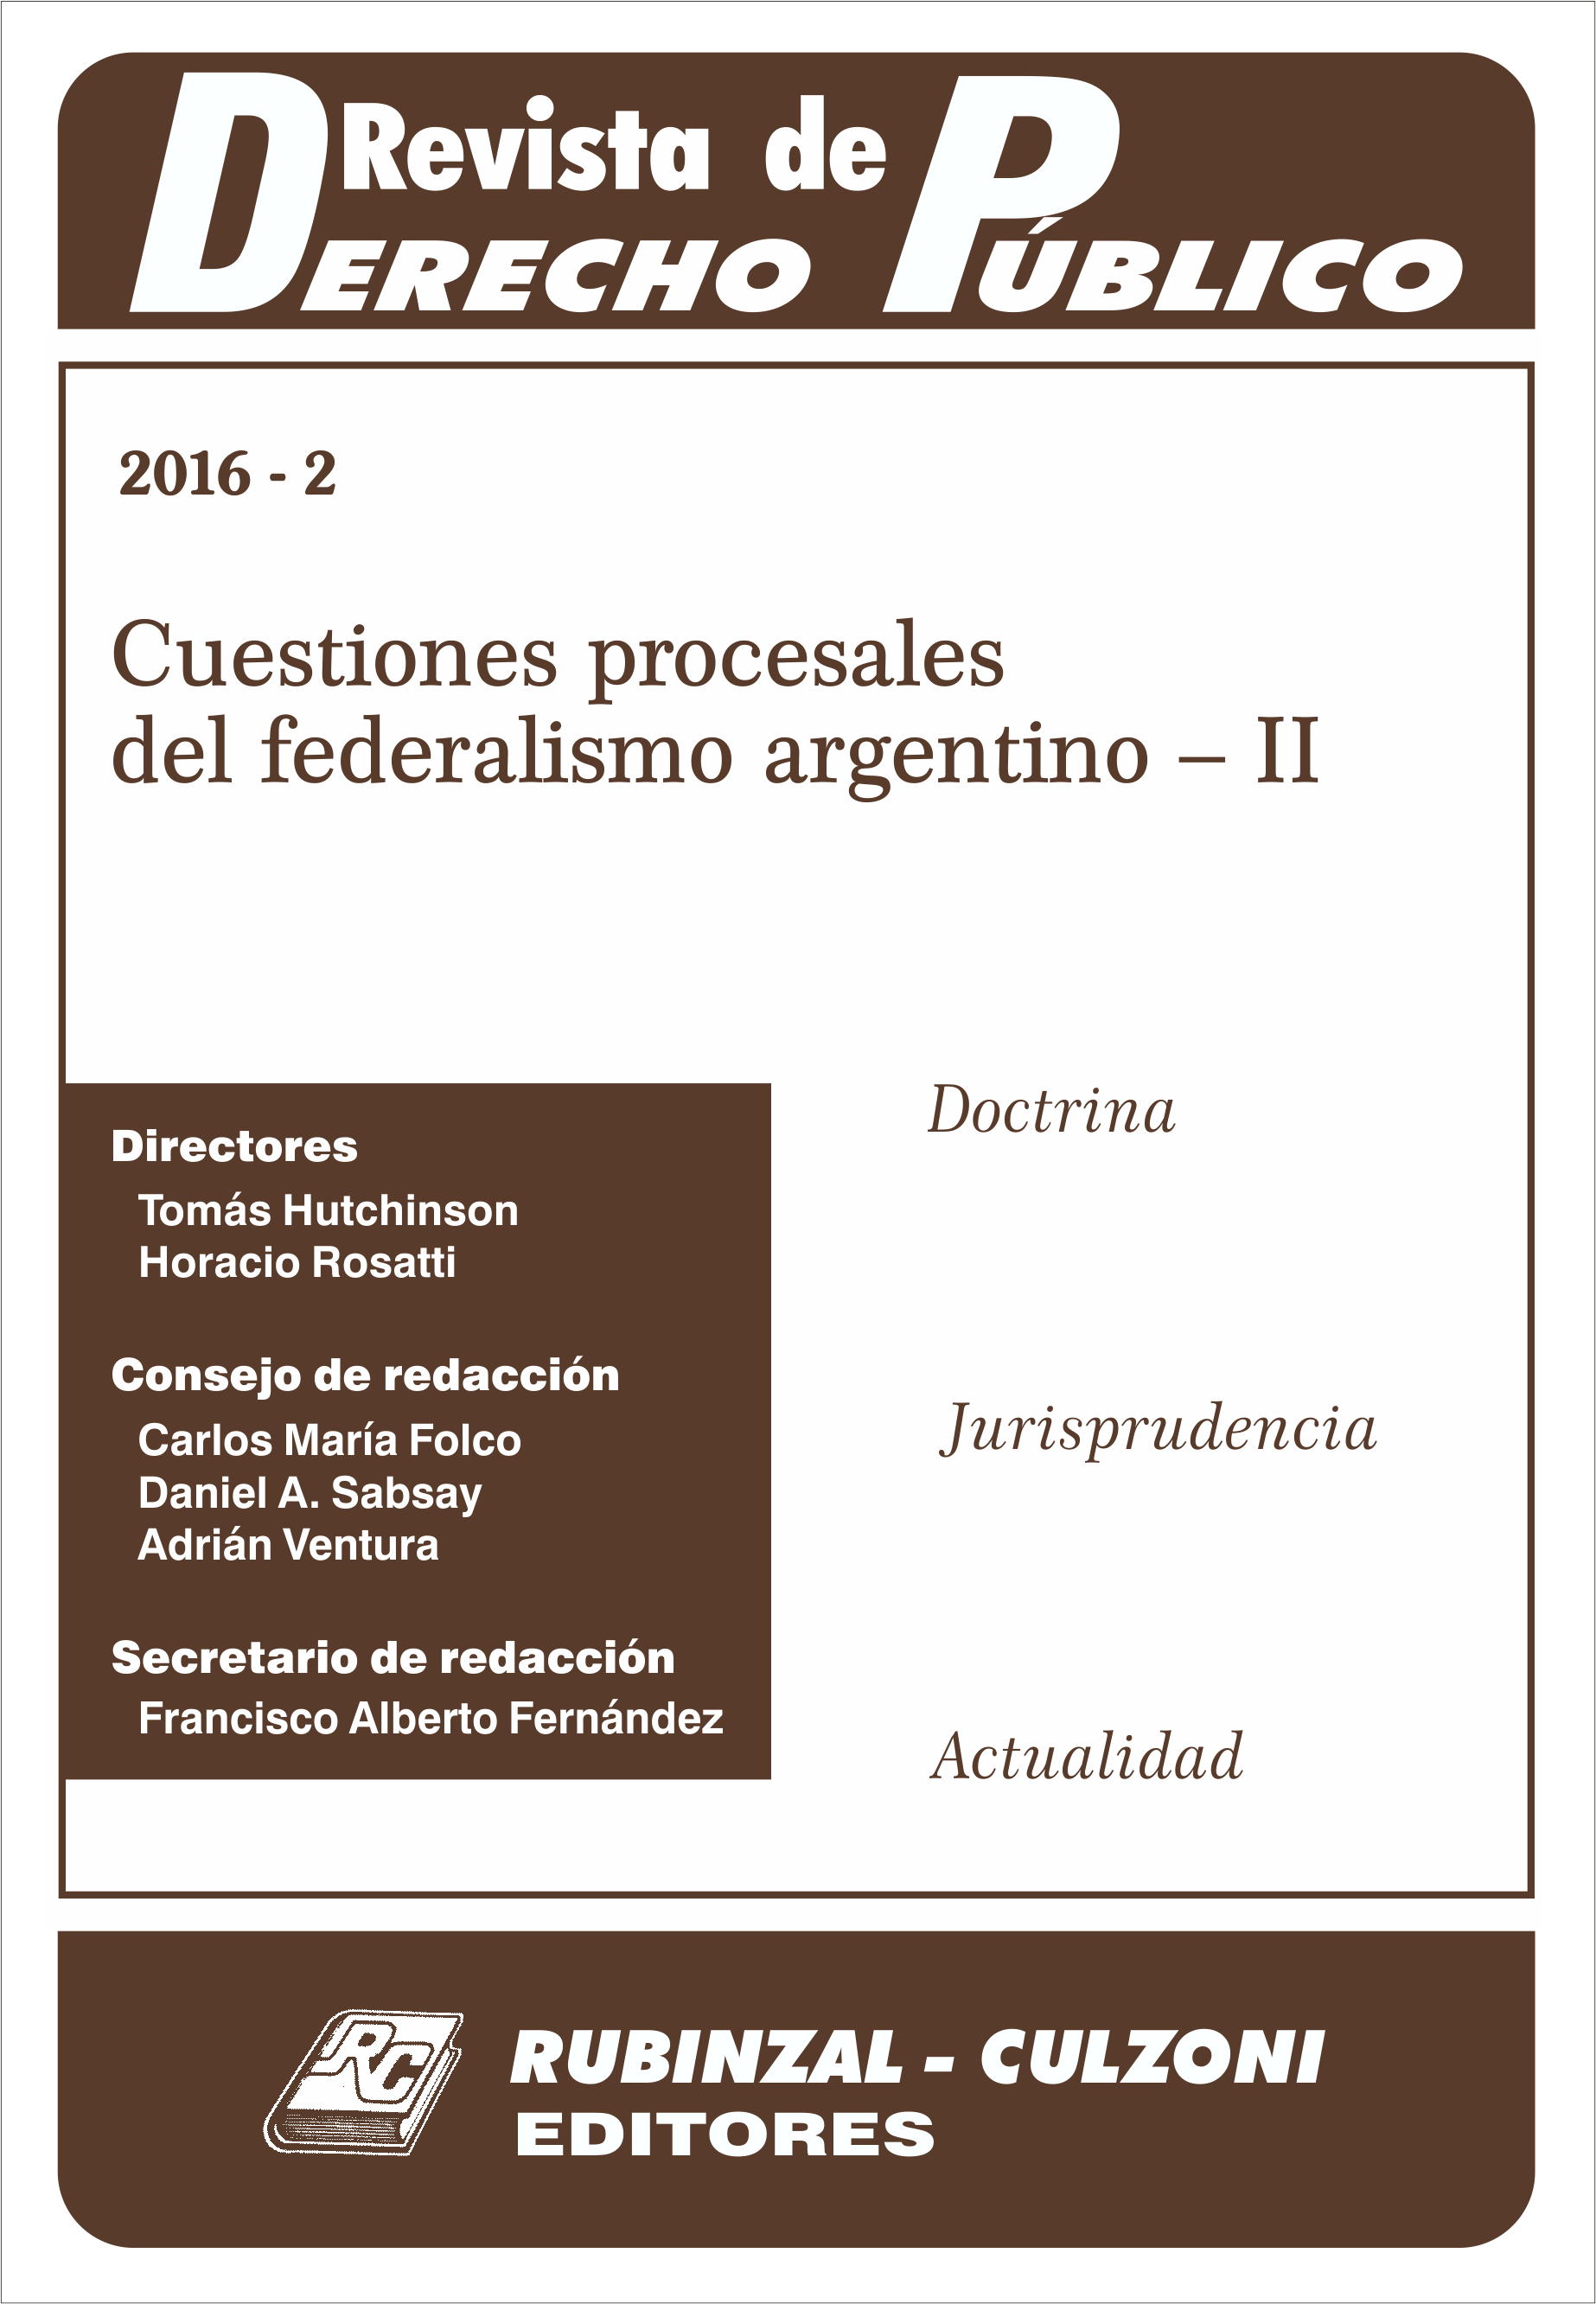 Revista de Derecho Público - Cuestiones procesales del federalismo argentino - II